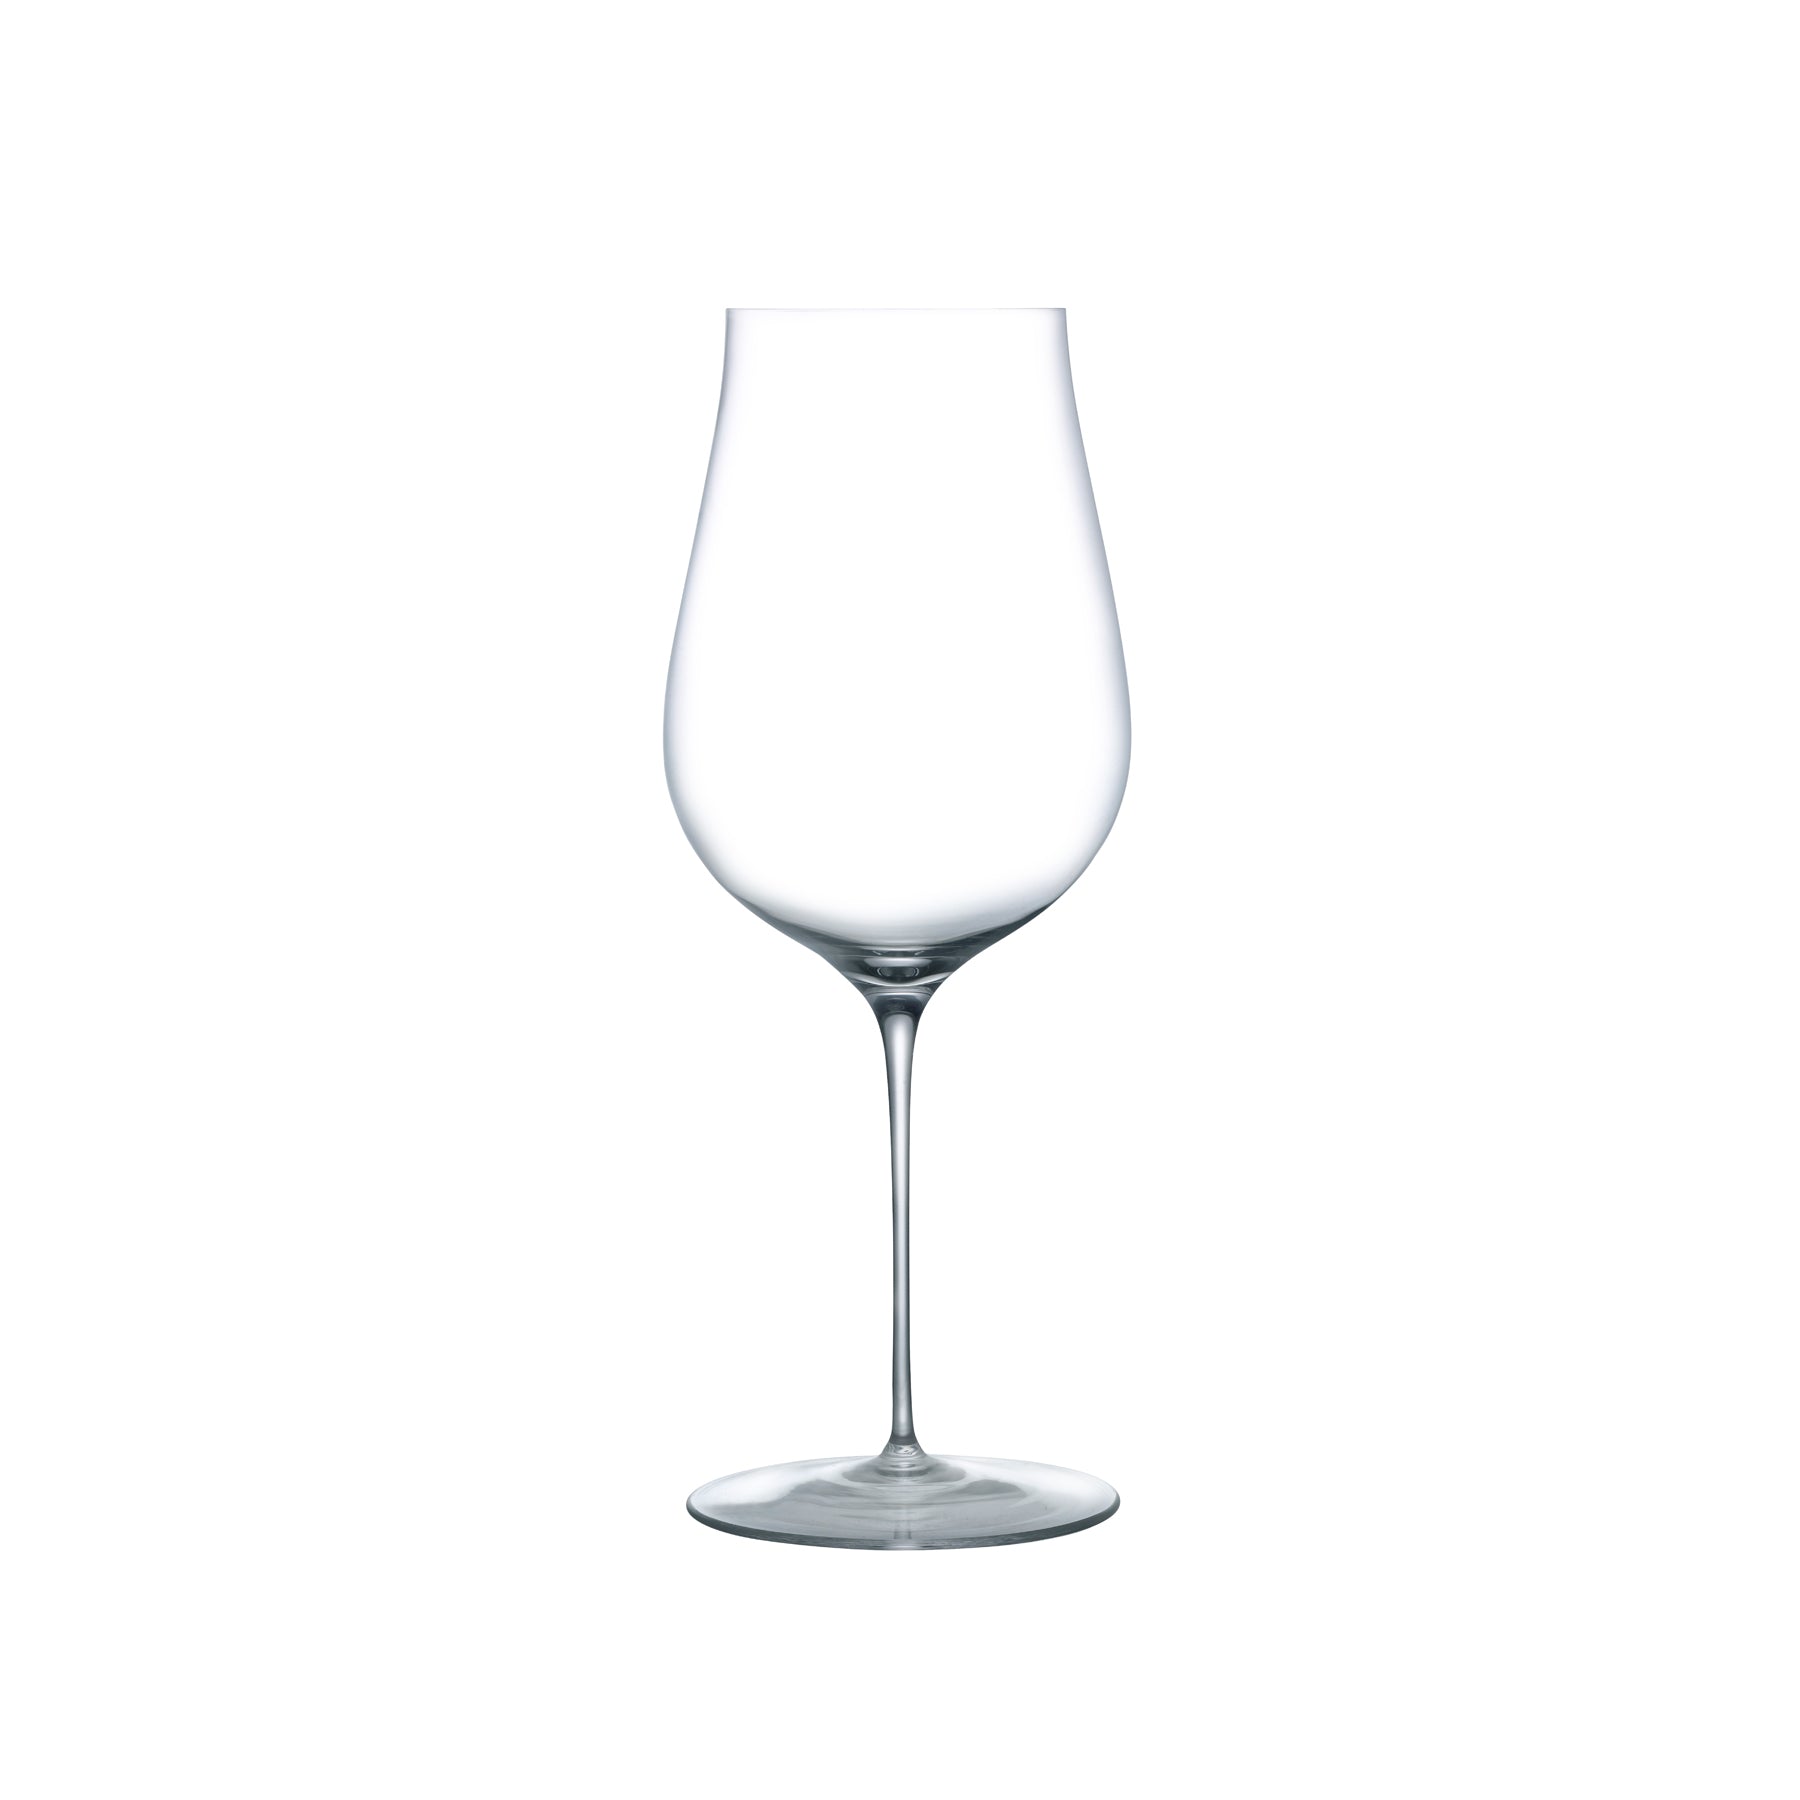 Ghost Zero Tulip White Wine Glass